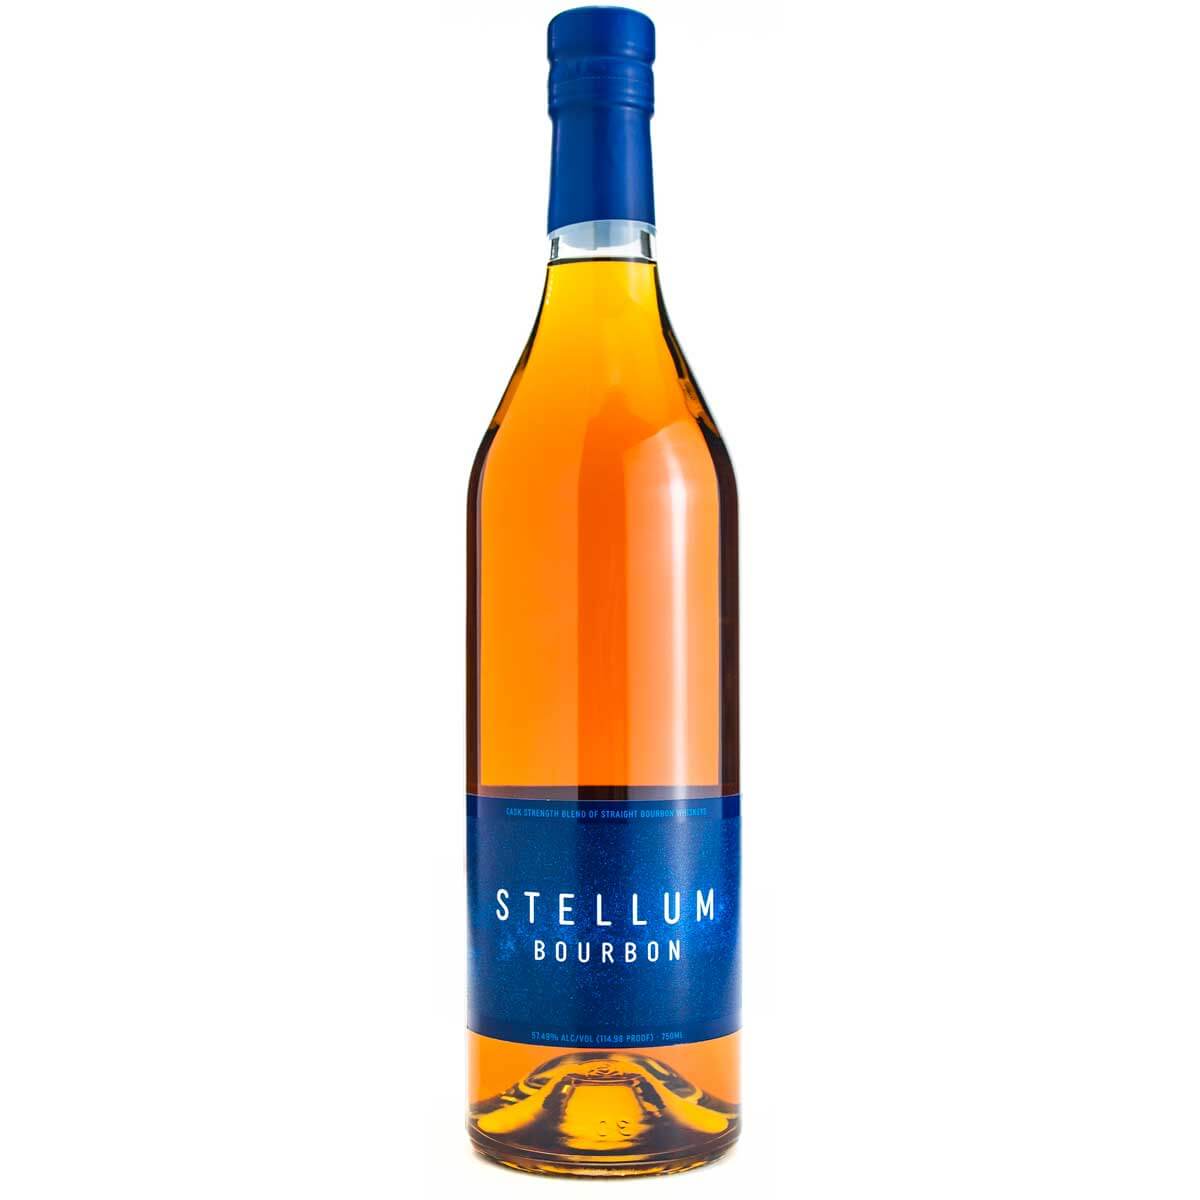 Stellum Bourbon bottle